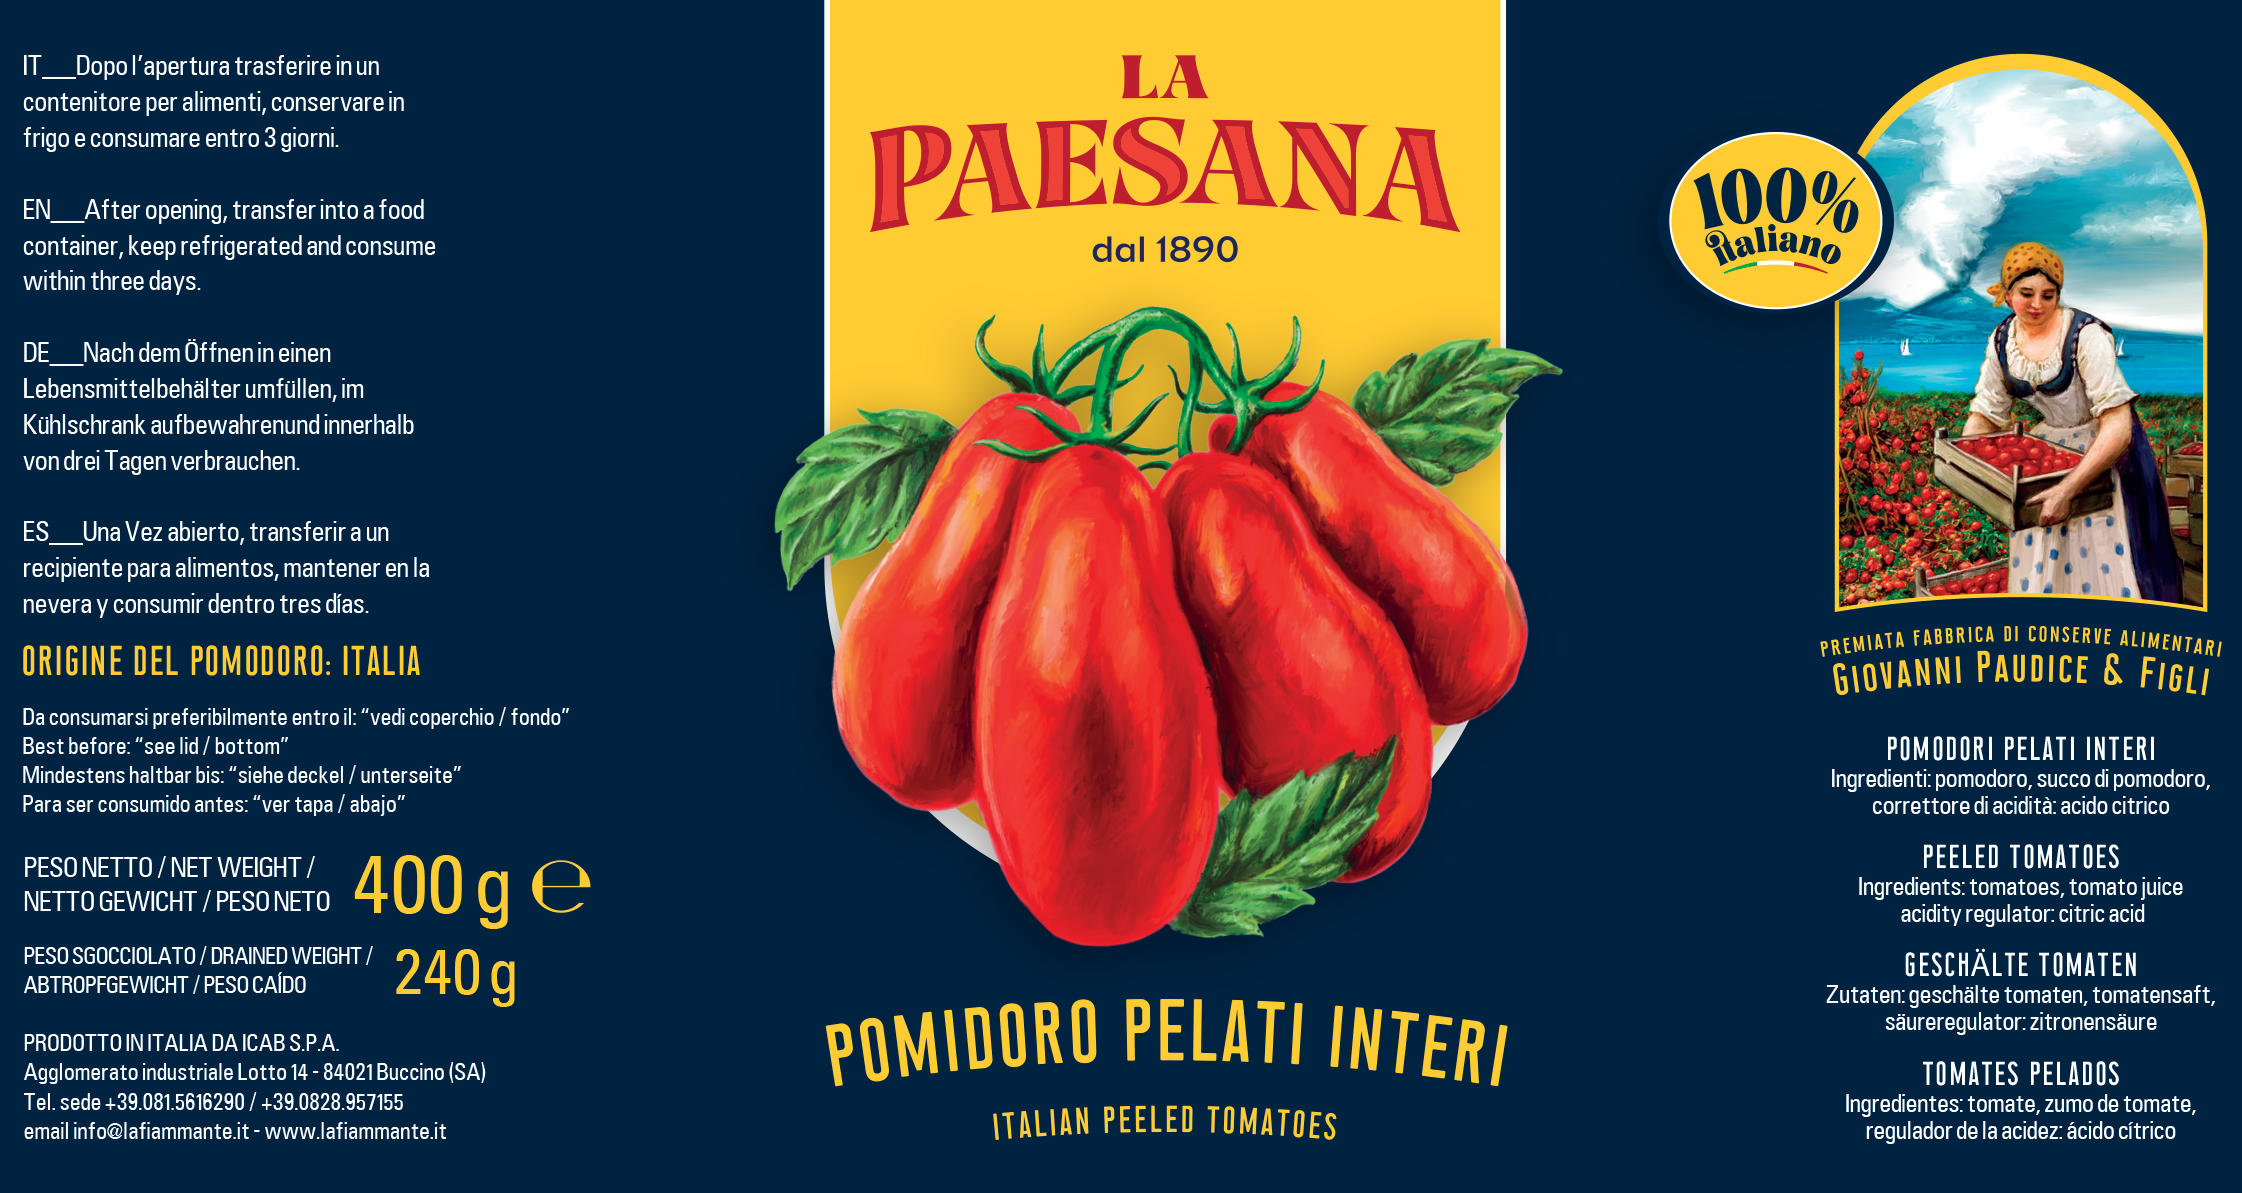 La Reale and La Paesana (F.lli Paudice), ICAB's historic brands, are back in the spotlight